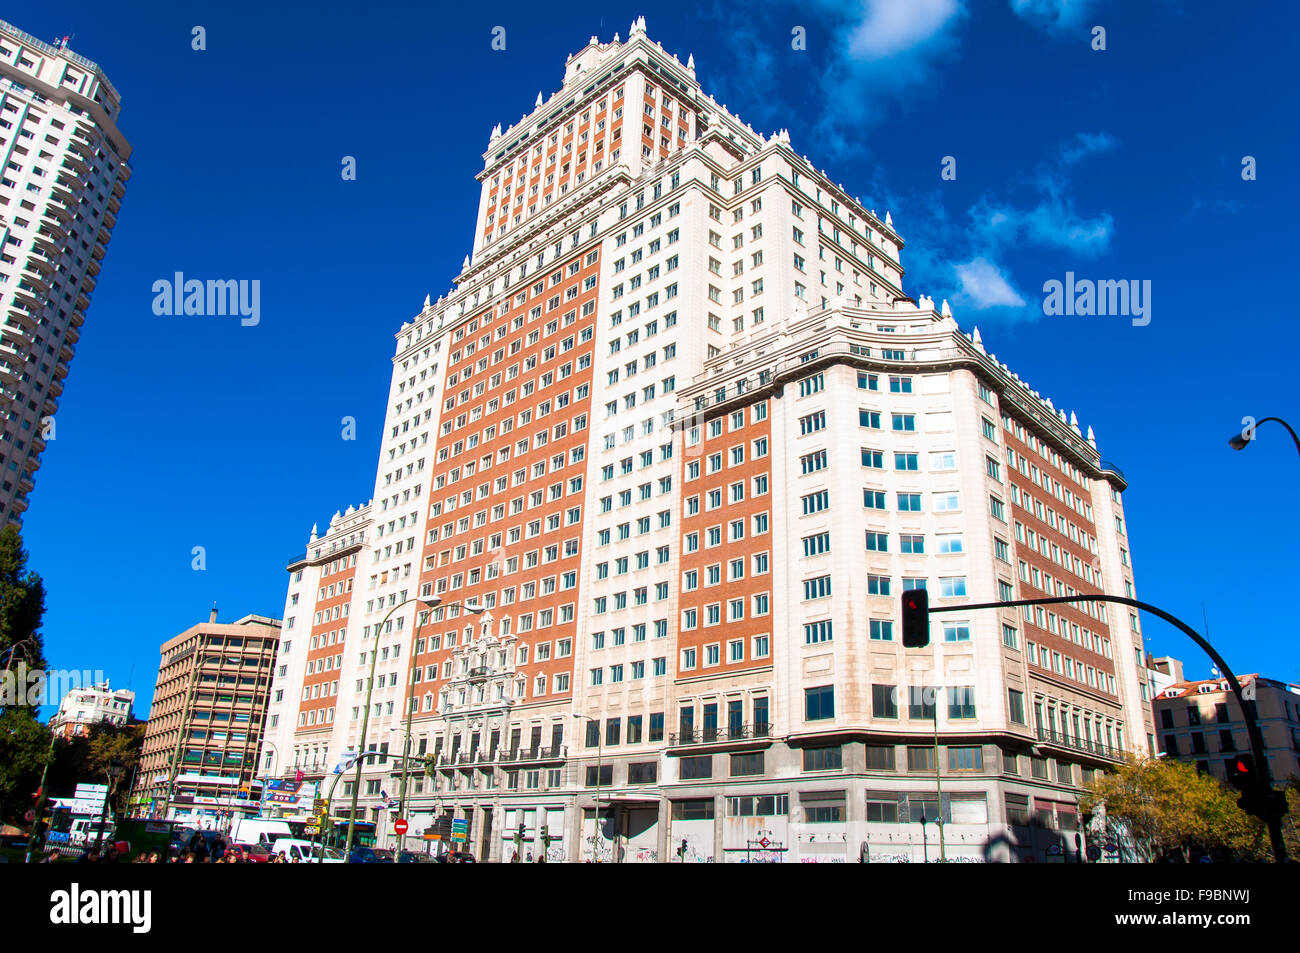 Edificio España, Plaza España, Madrid, Spain Stock Photo